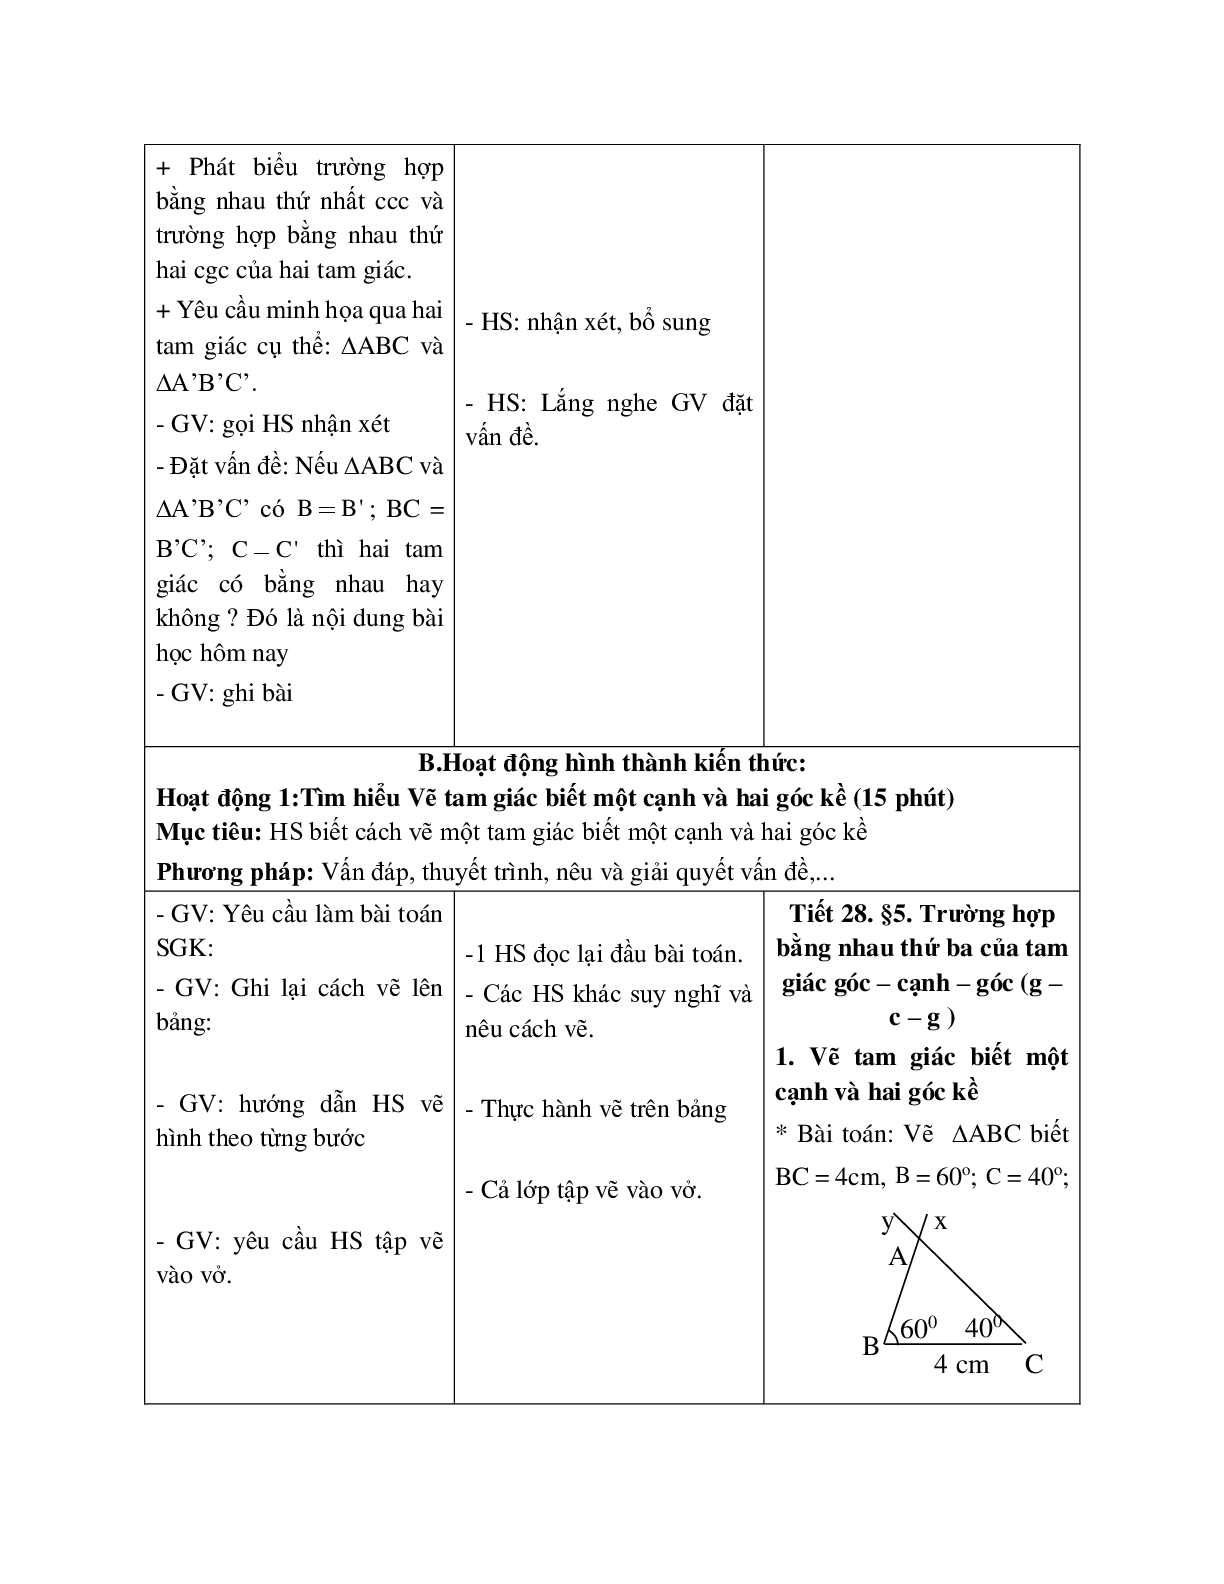 Giáo án Toán học 7 bài 5: Trường hợp bằng nhau thứ ba của tam giác g.c.g hay nhất (trang 2)